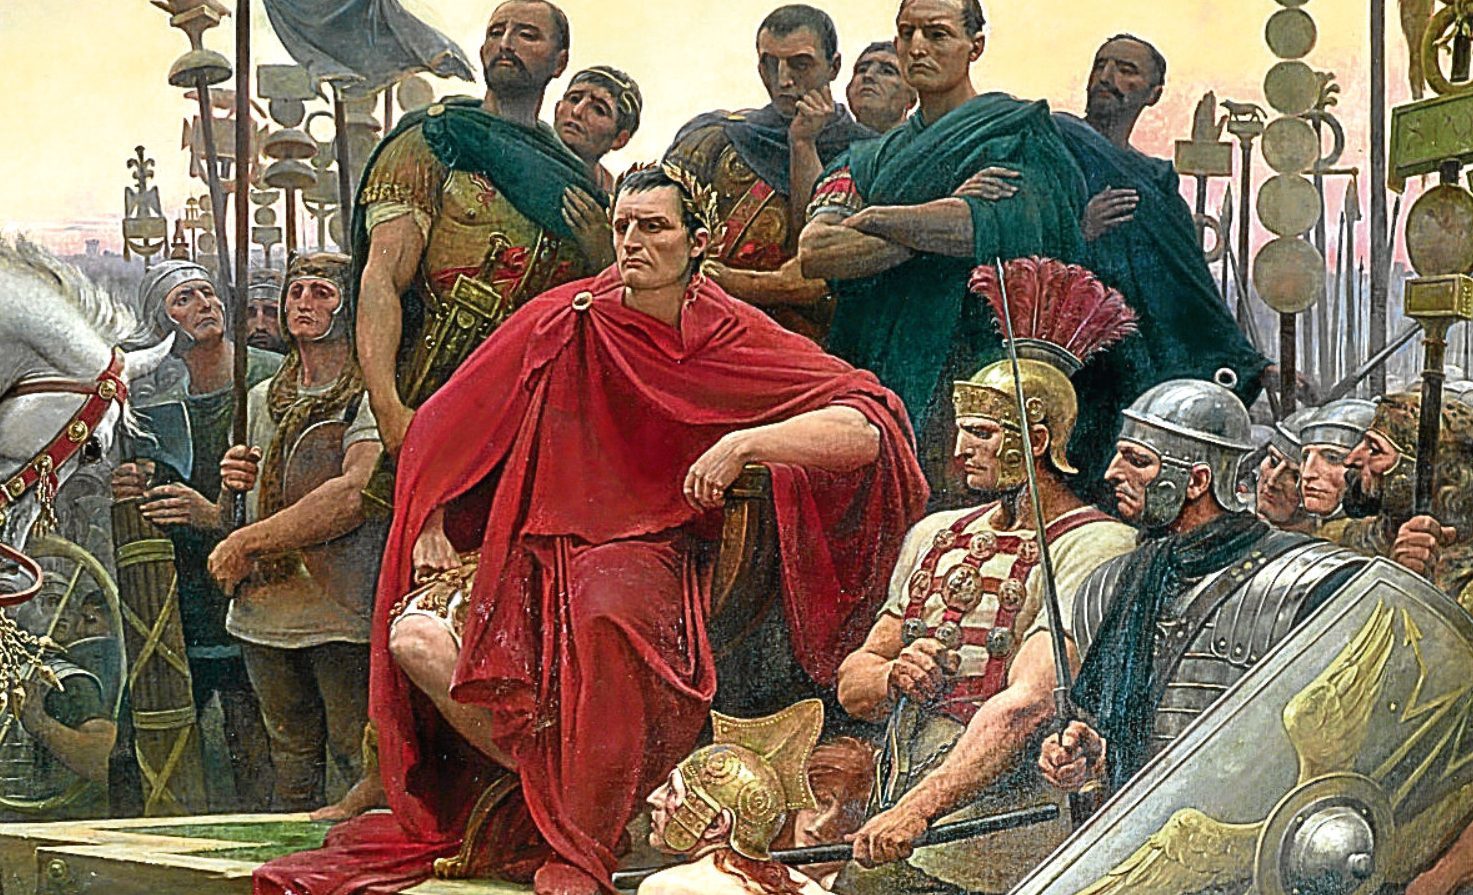 Julius Caesar had the condition